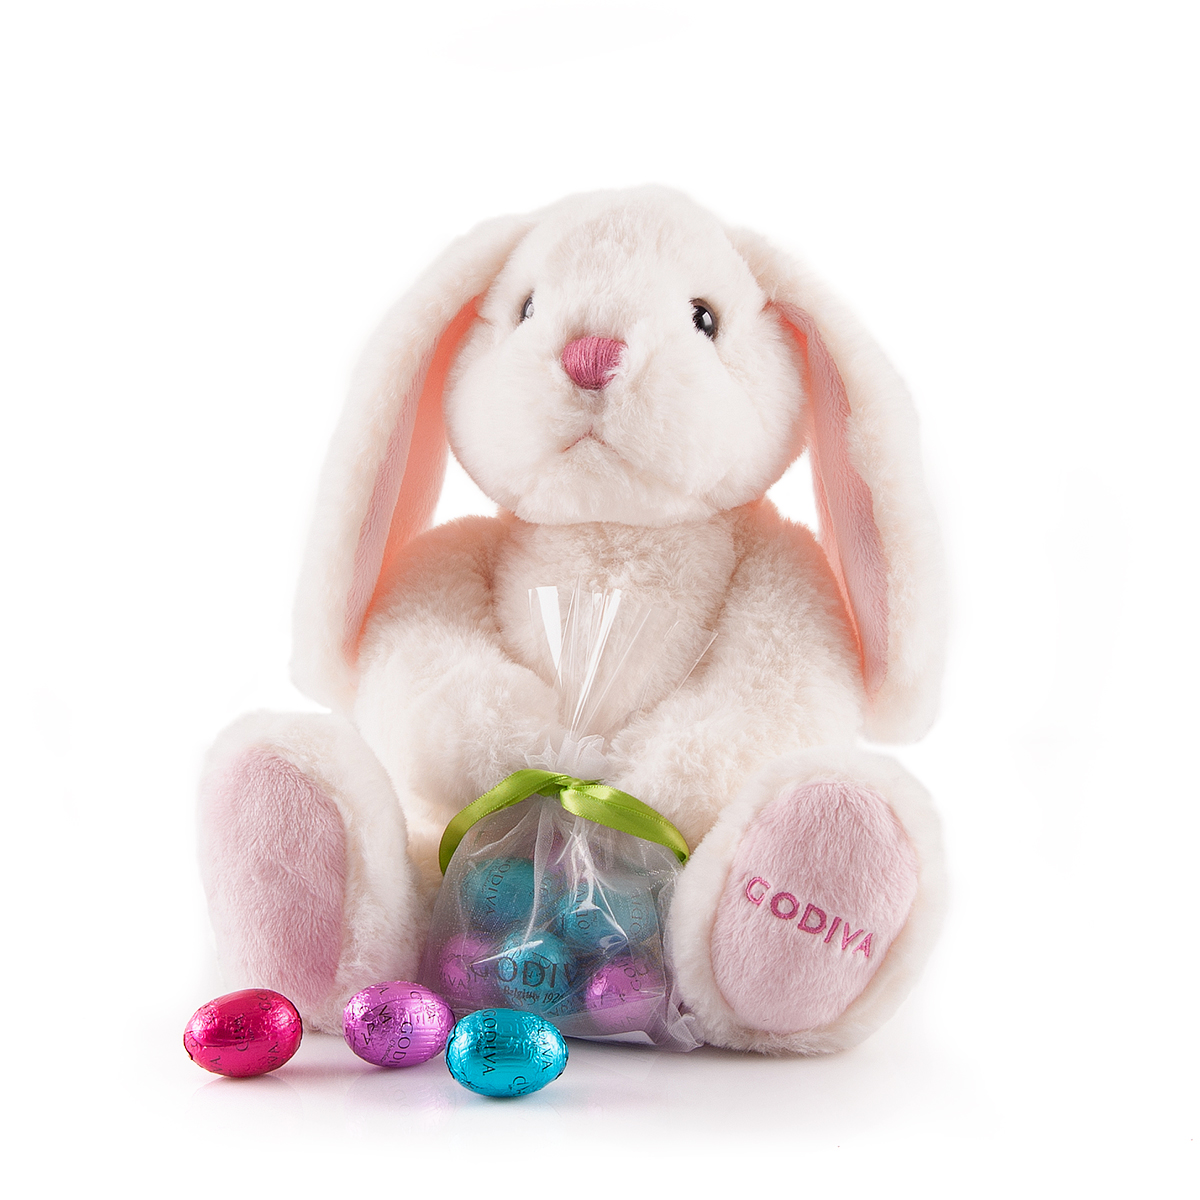 Doux et tendre, notre lapin de Pâques apporte un sachet de petits œufs en chocolat à partager dans la joie.